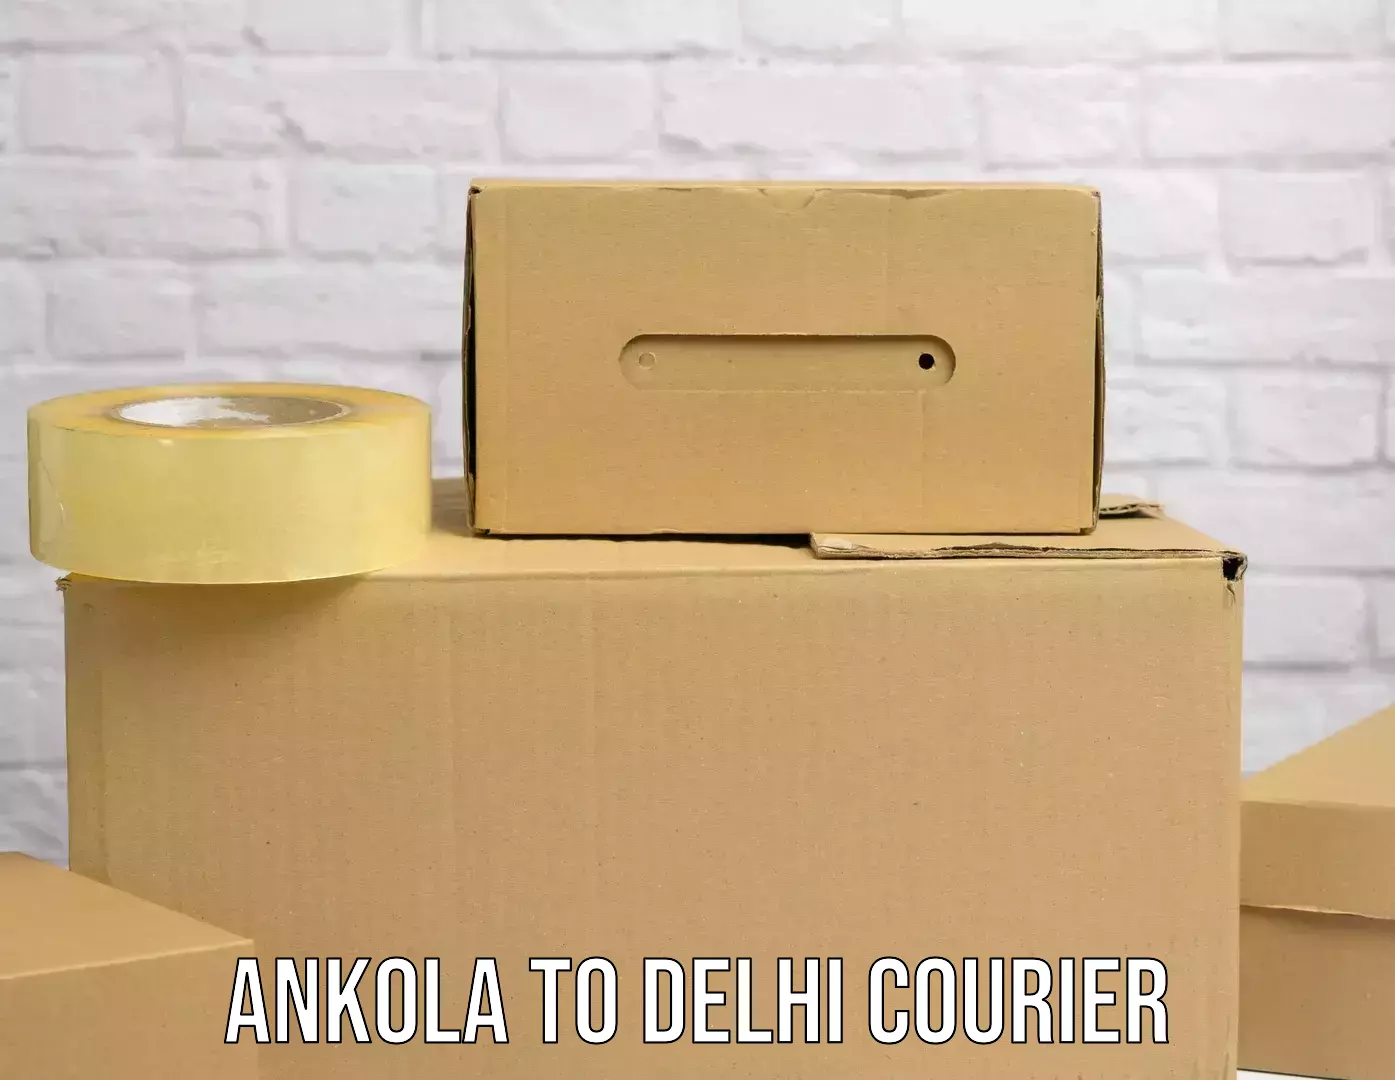 Reliable delivery network Ankola to Jamia Millia Islamia New Delhi